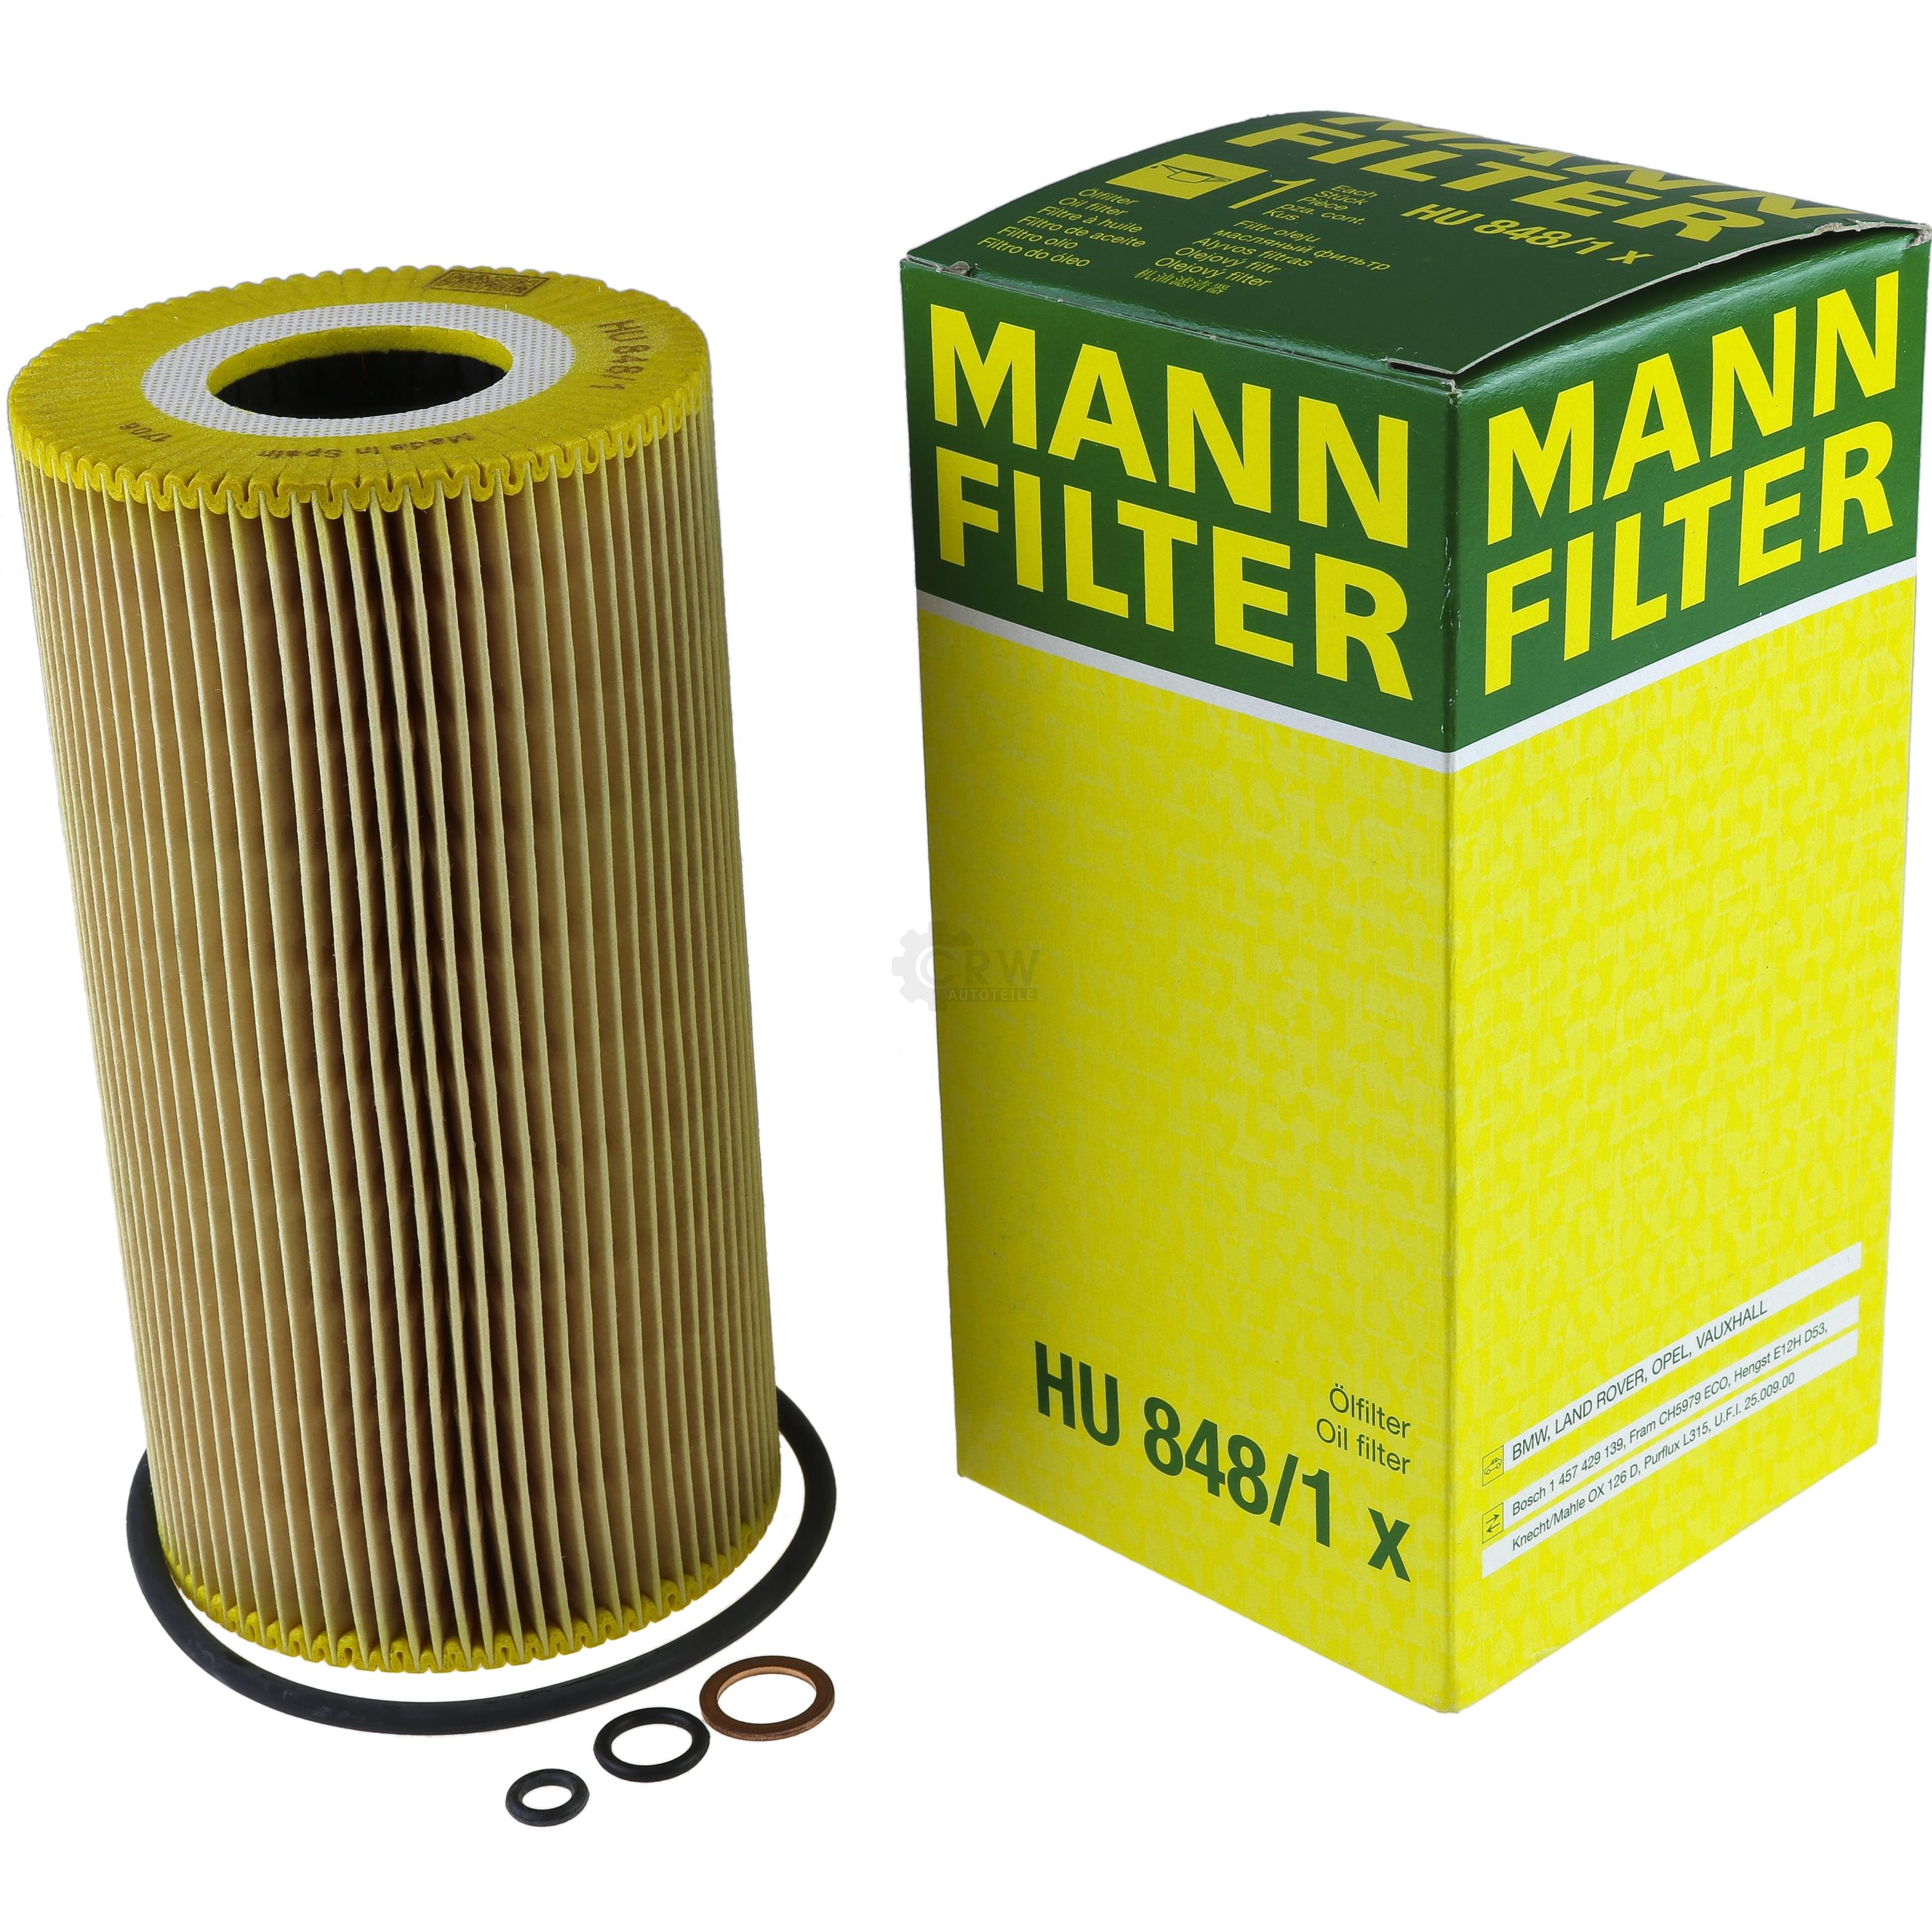 MANN-FILTER Ölfilter HU 848/1 x Oil Filter